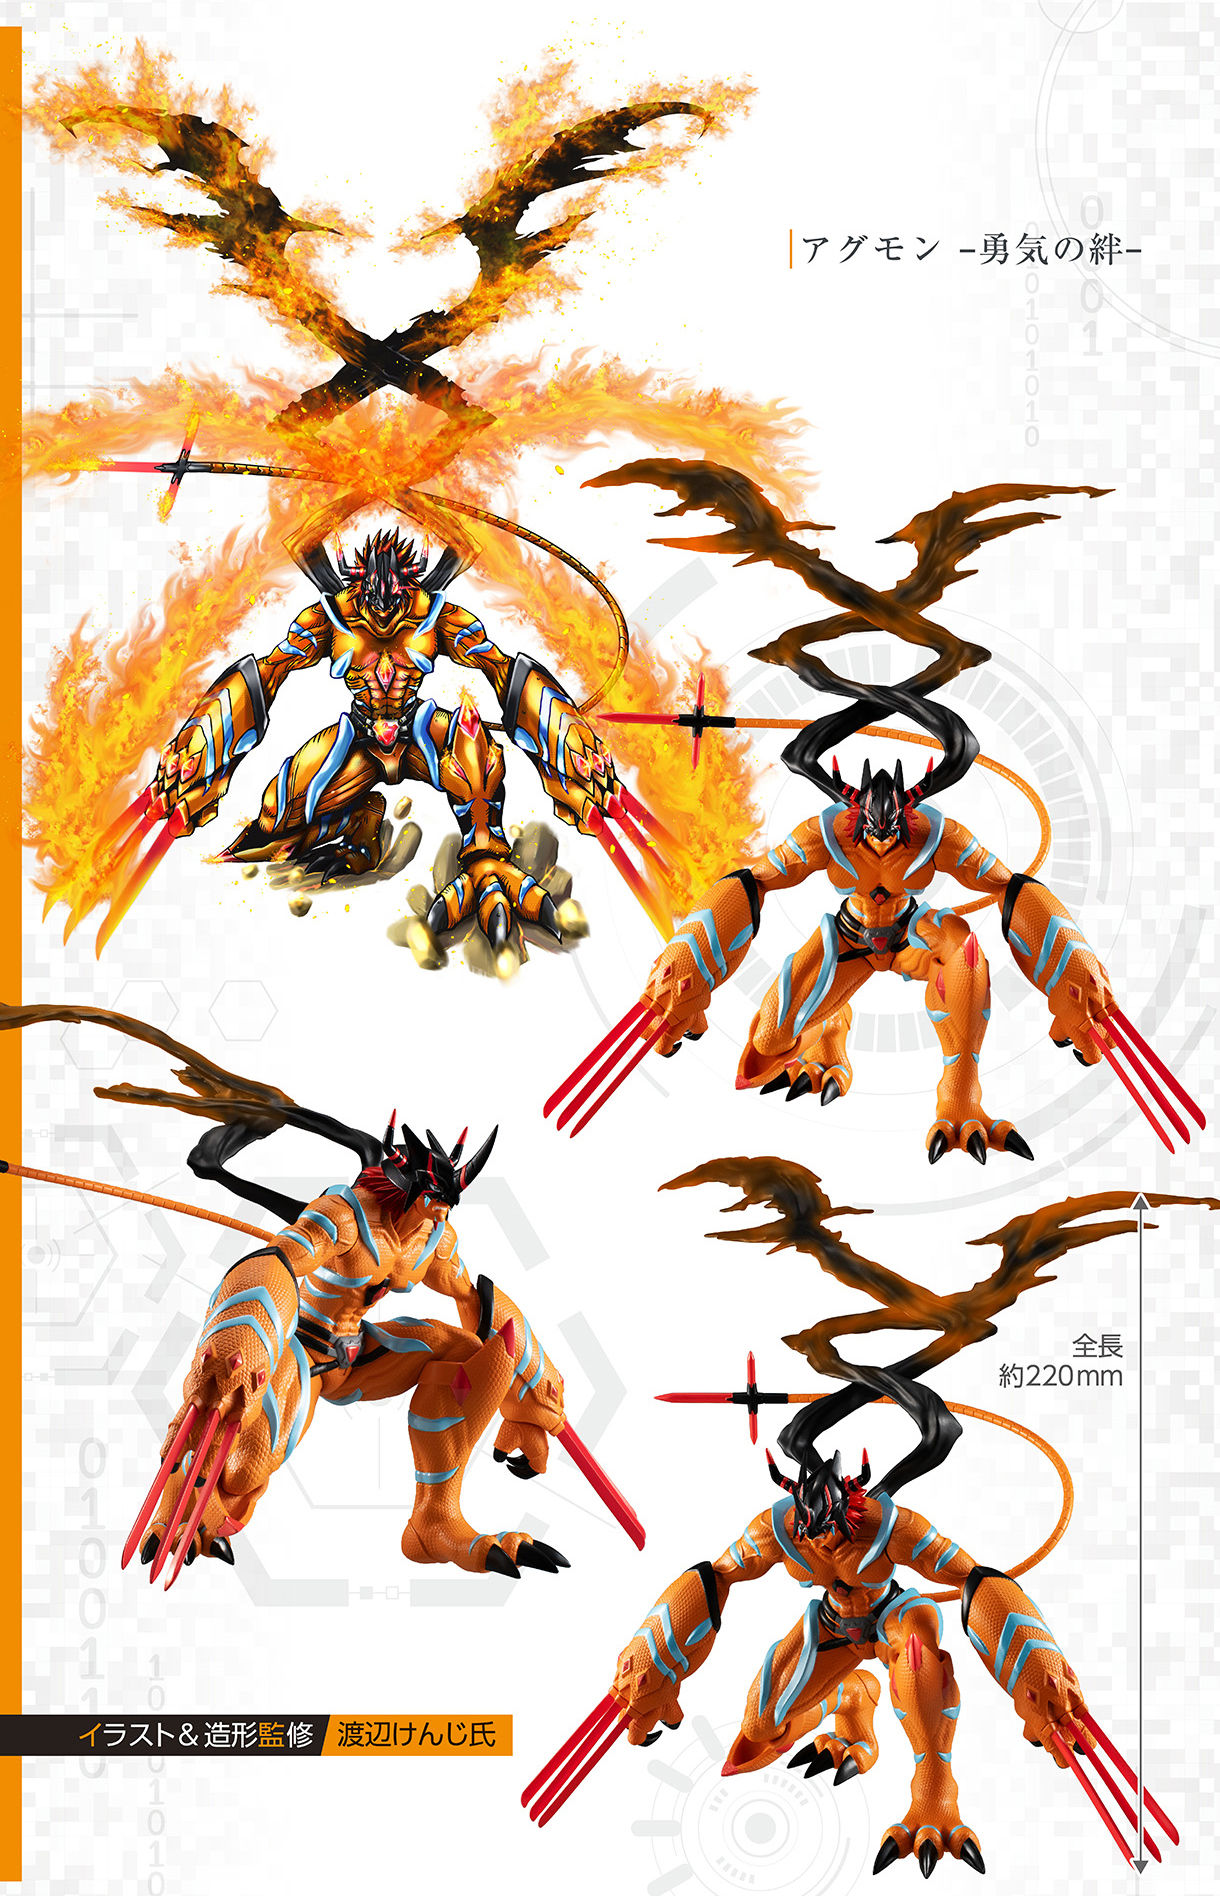 Bandai Digimon Adventure Last Evolution Kizuna Agumon Bond Of